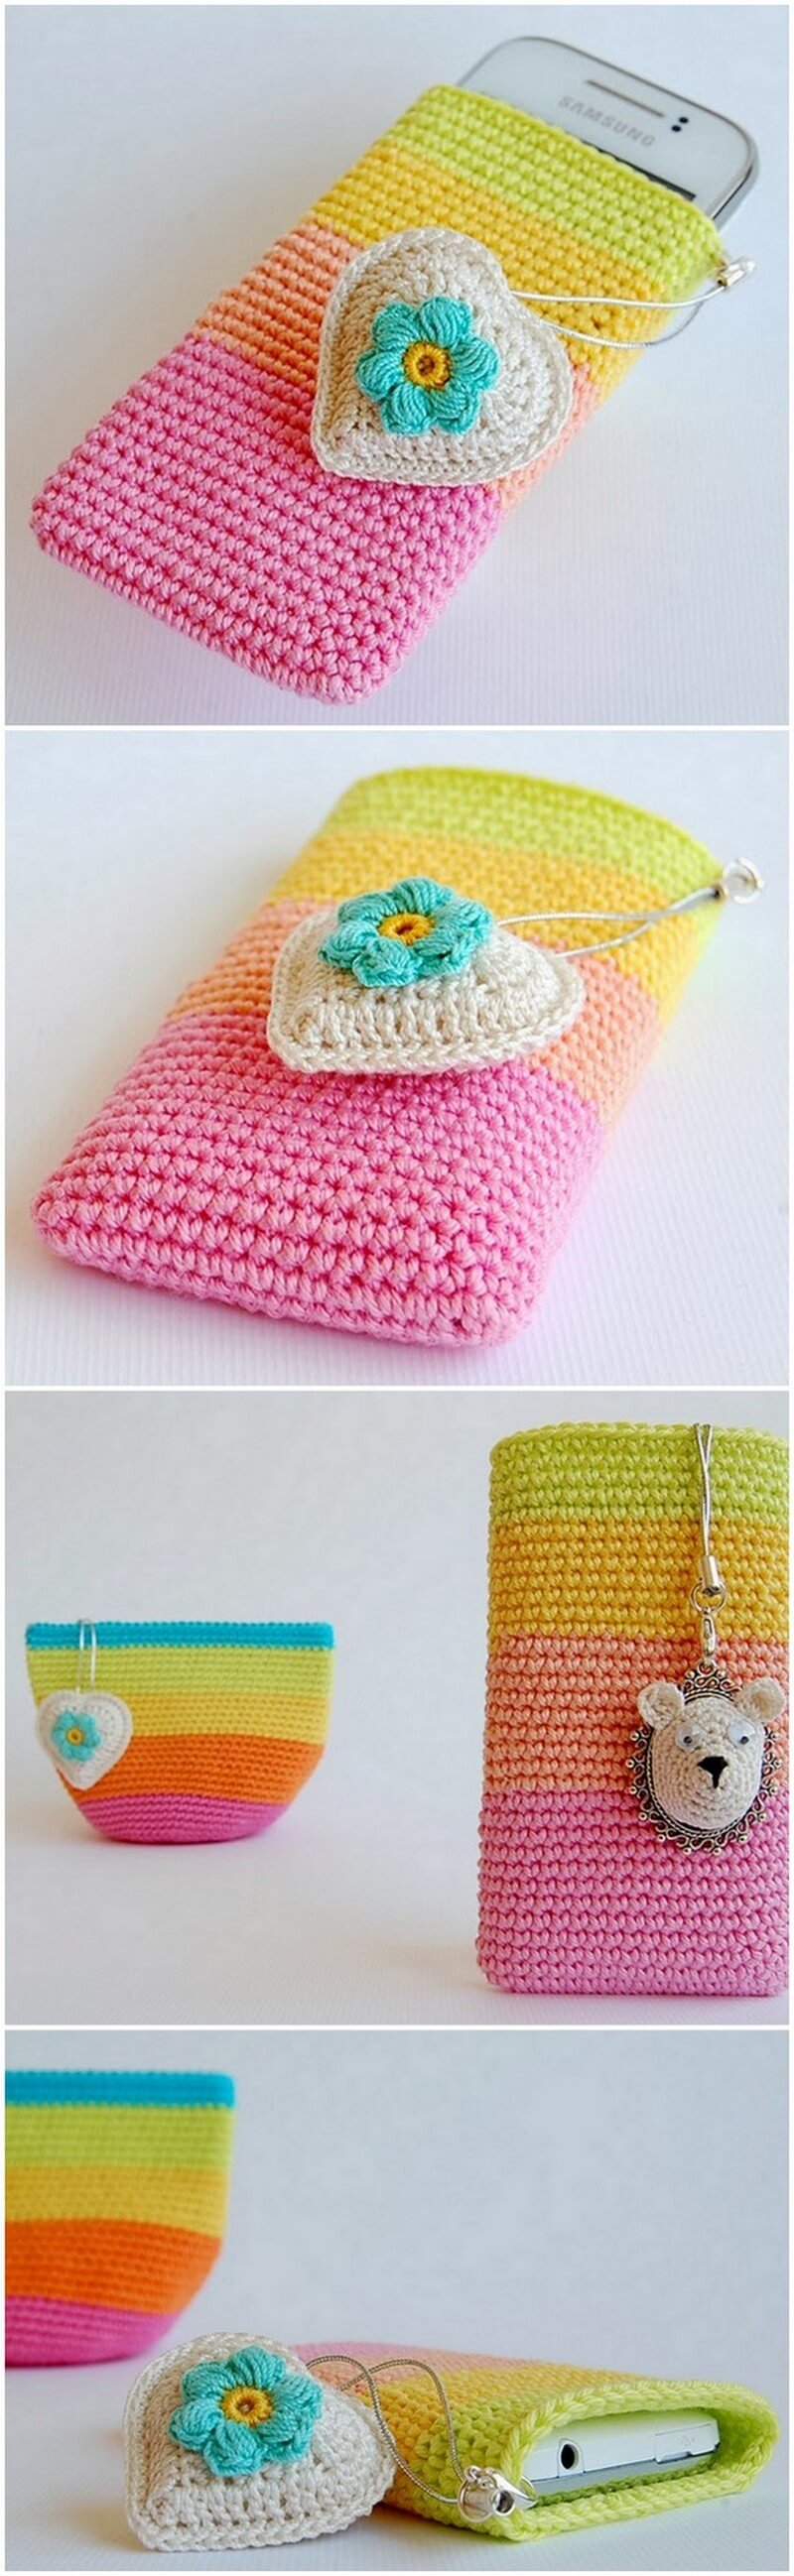 Crochet Mobile Cover Pattern (16)